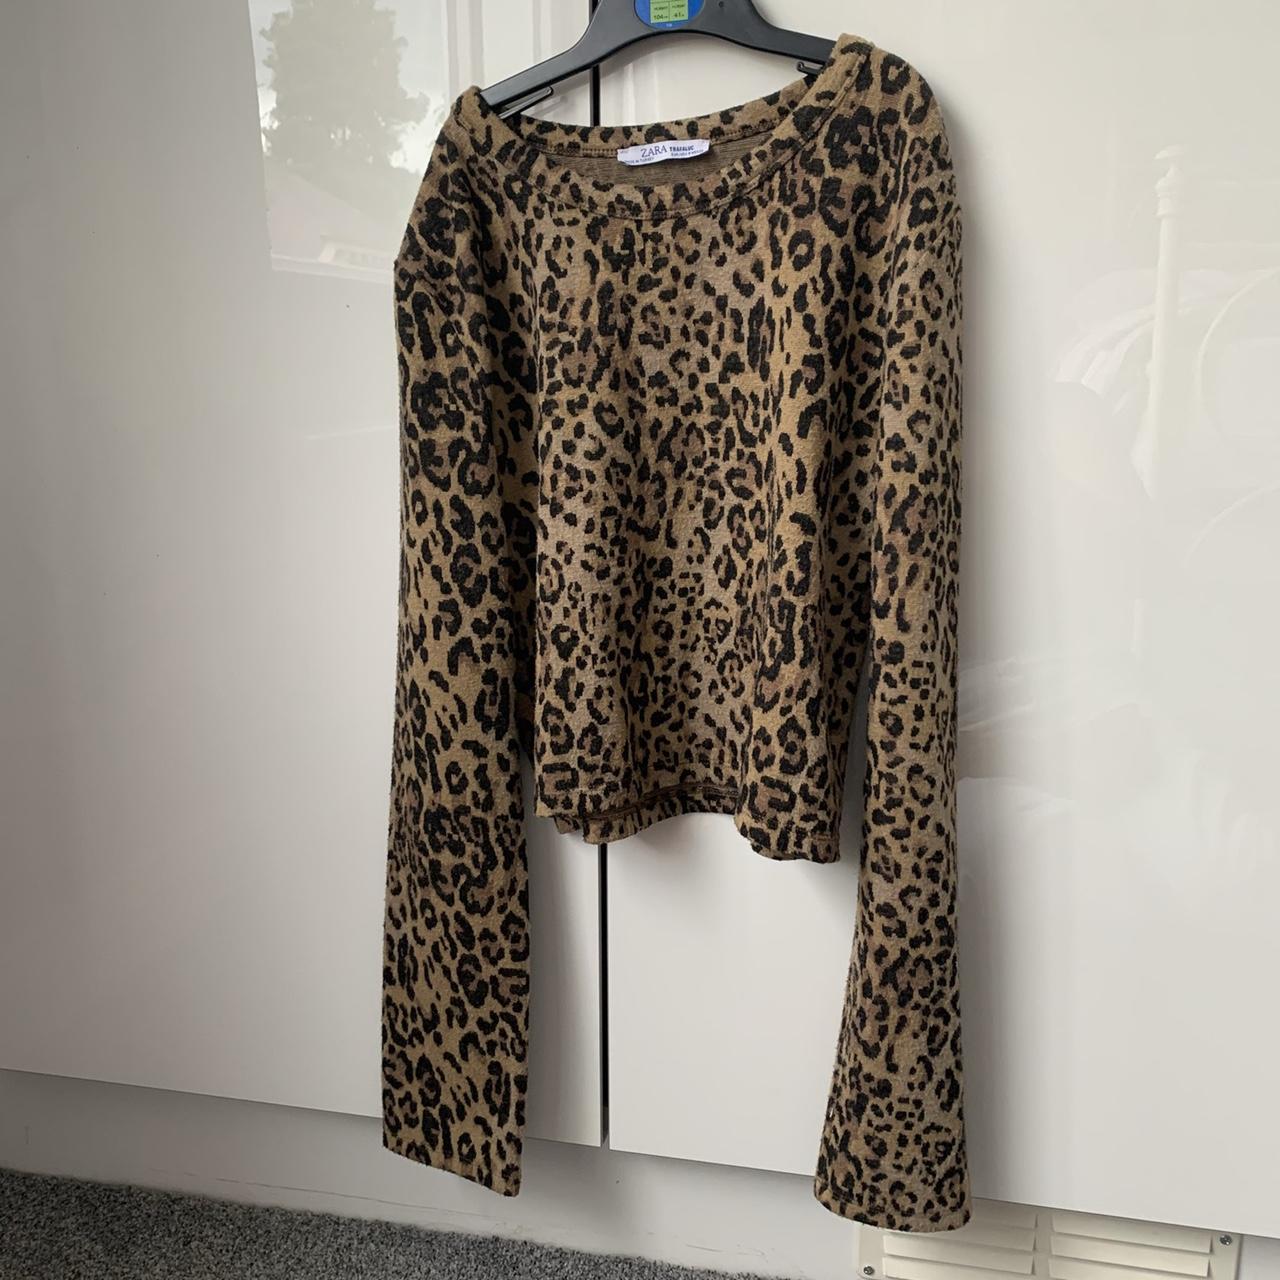 Zara cheetah print woollen long sleeved top x size... - Depop